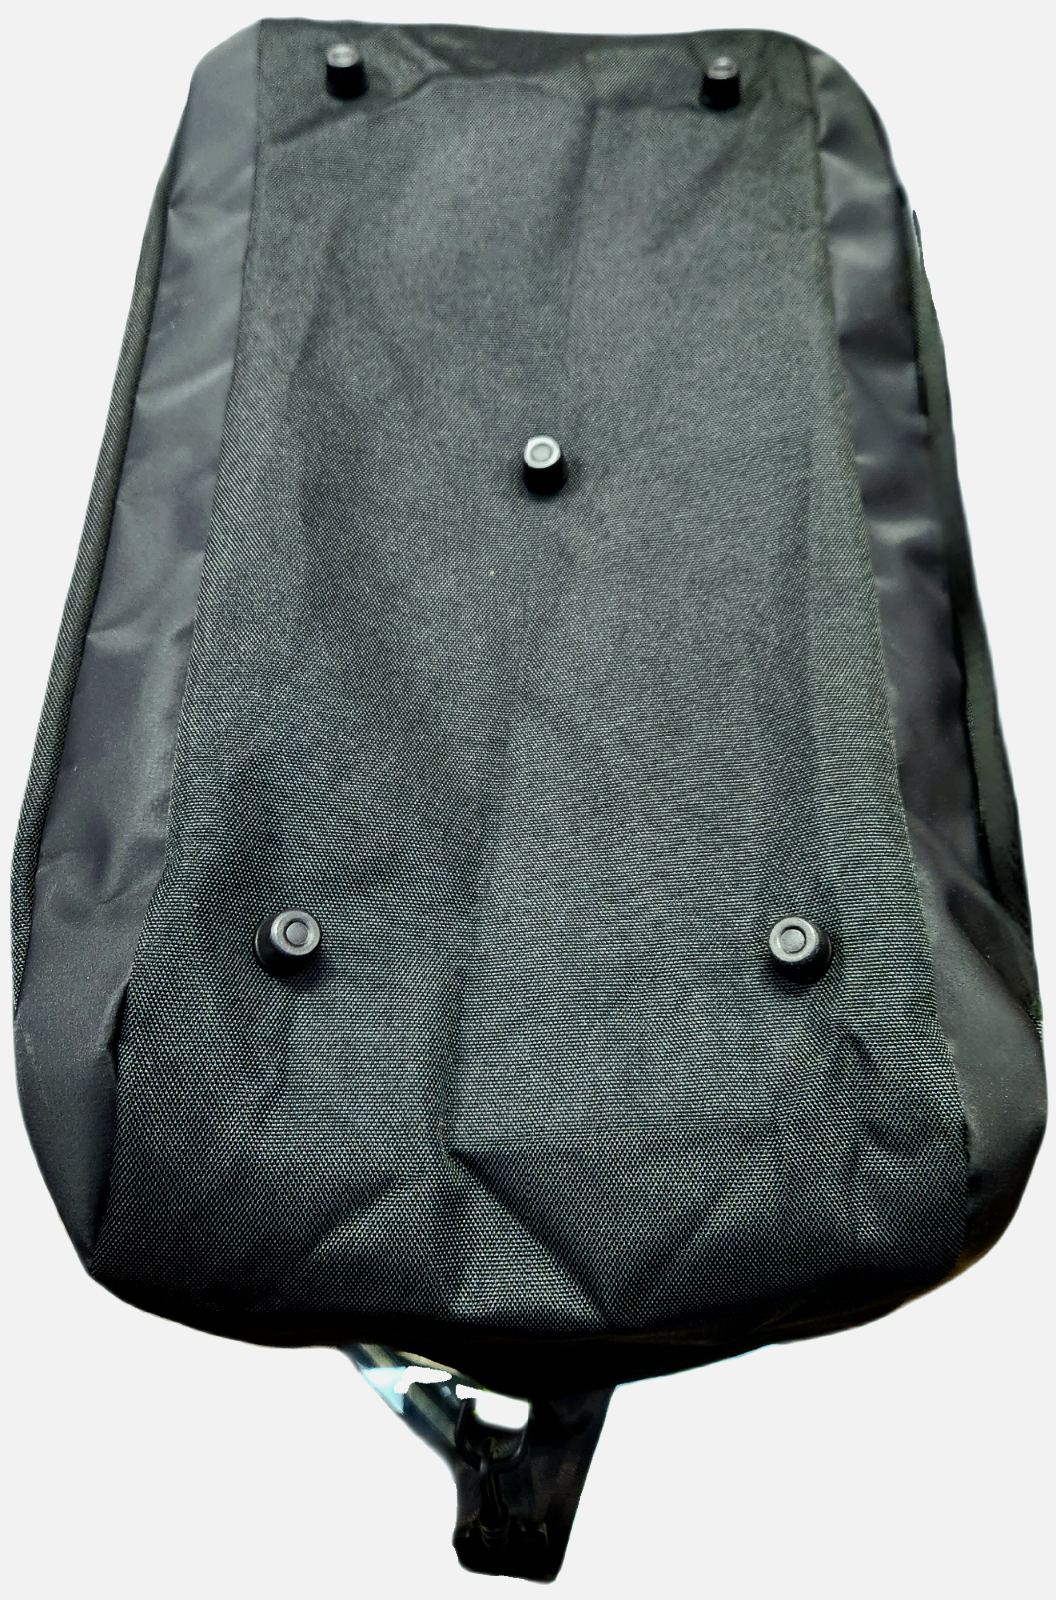 Sac de voyage et sac pour ordinateur portable Aston Martin F1™ Team Weekender - Accessoires - Noir